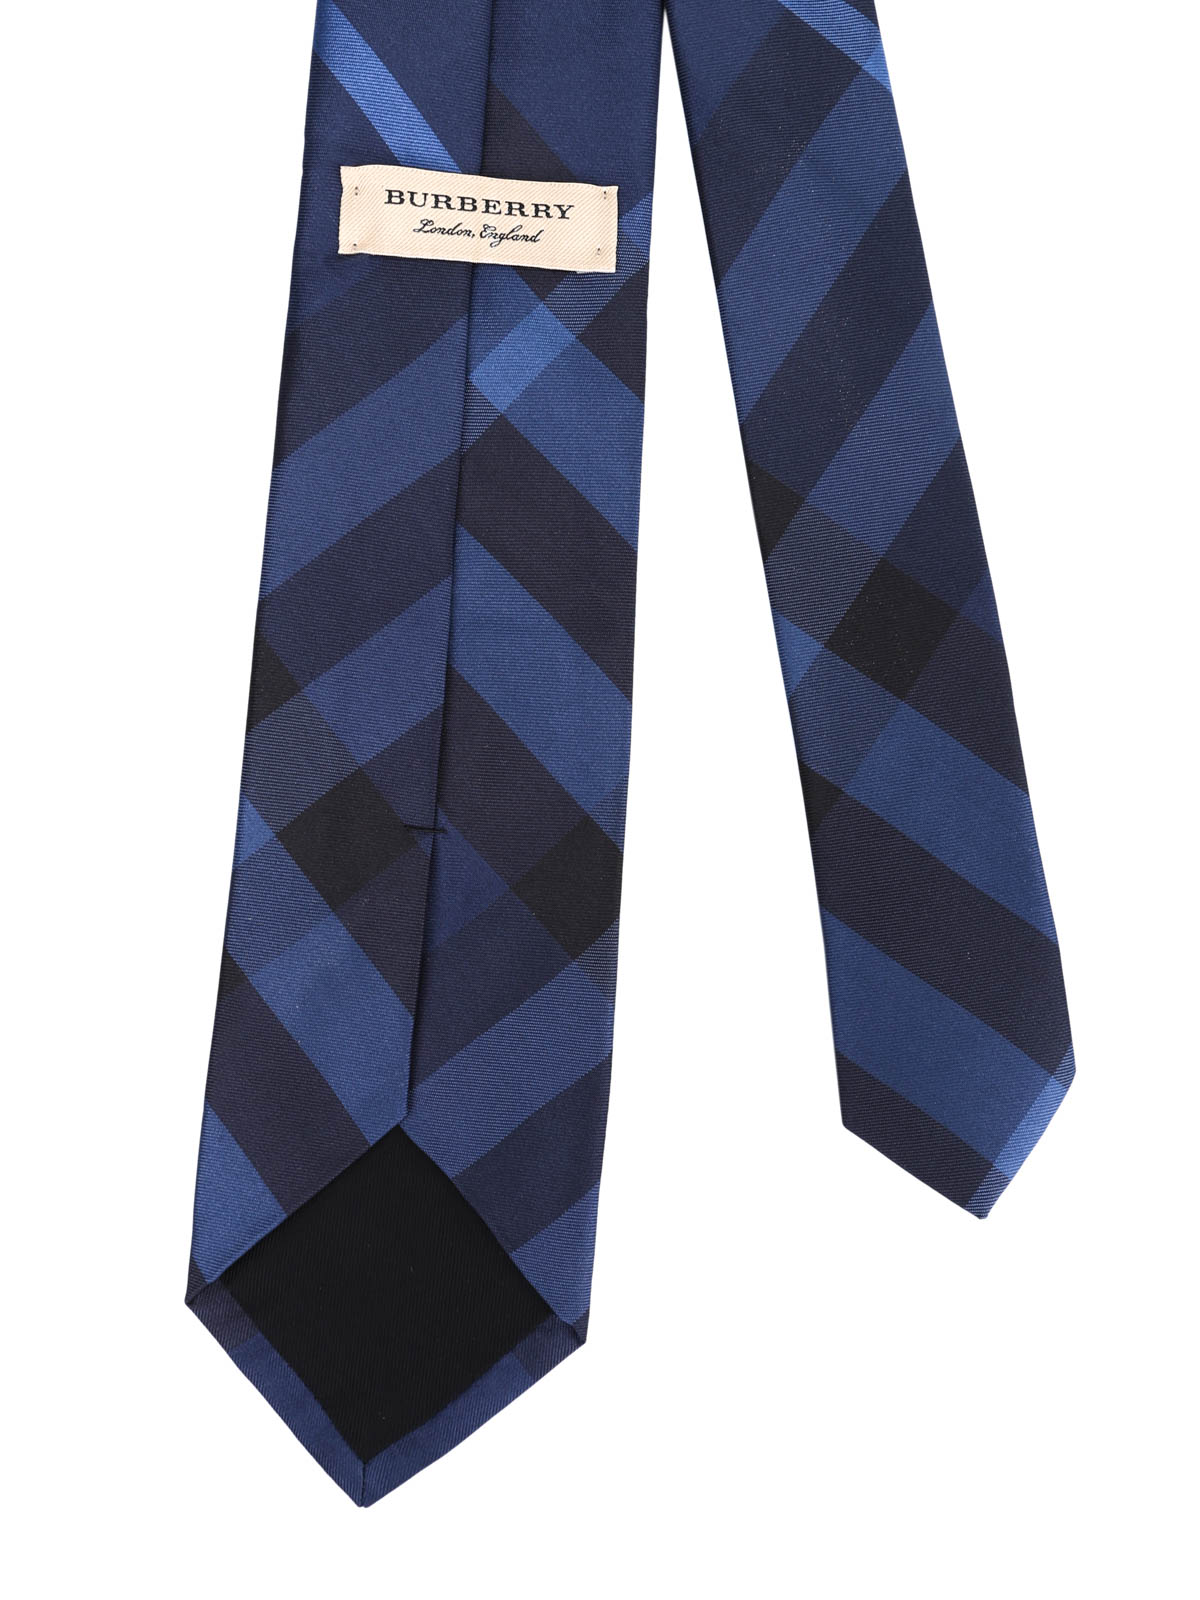 Burberry Krawatte Holliday  Brown Herren Accessoires Krawatten & Einstecktücher Burberry Krawatten & Einstecktücher 